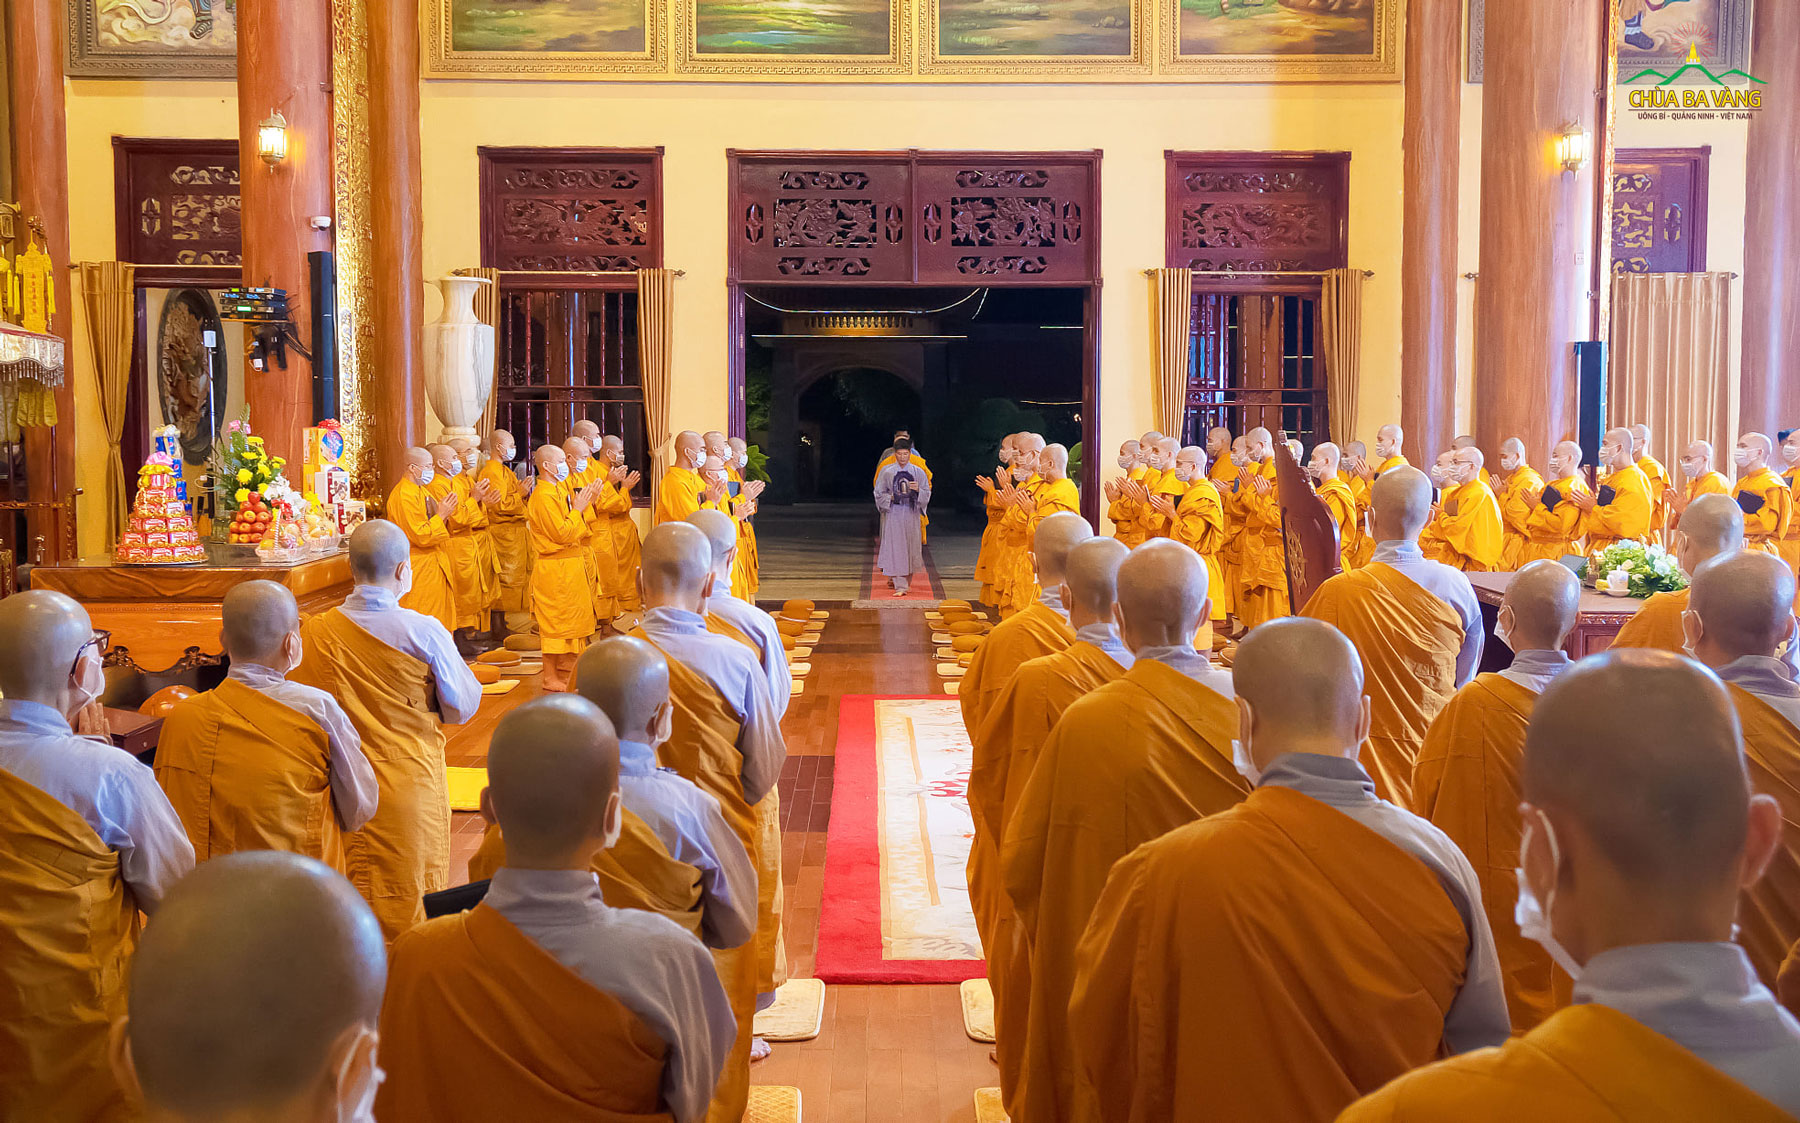 Chư Tăng Ni, Phật tử đang tu tập cấm túc tại chùa cung thỉnh Sư Phụ quang lâm chính điện, giảng Pháp cho tứ chúng được thừa hưởng ân đức của Tam Bảo, học lời Phật dạy